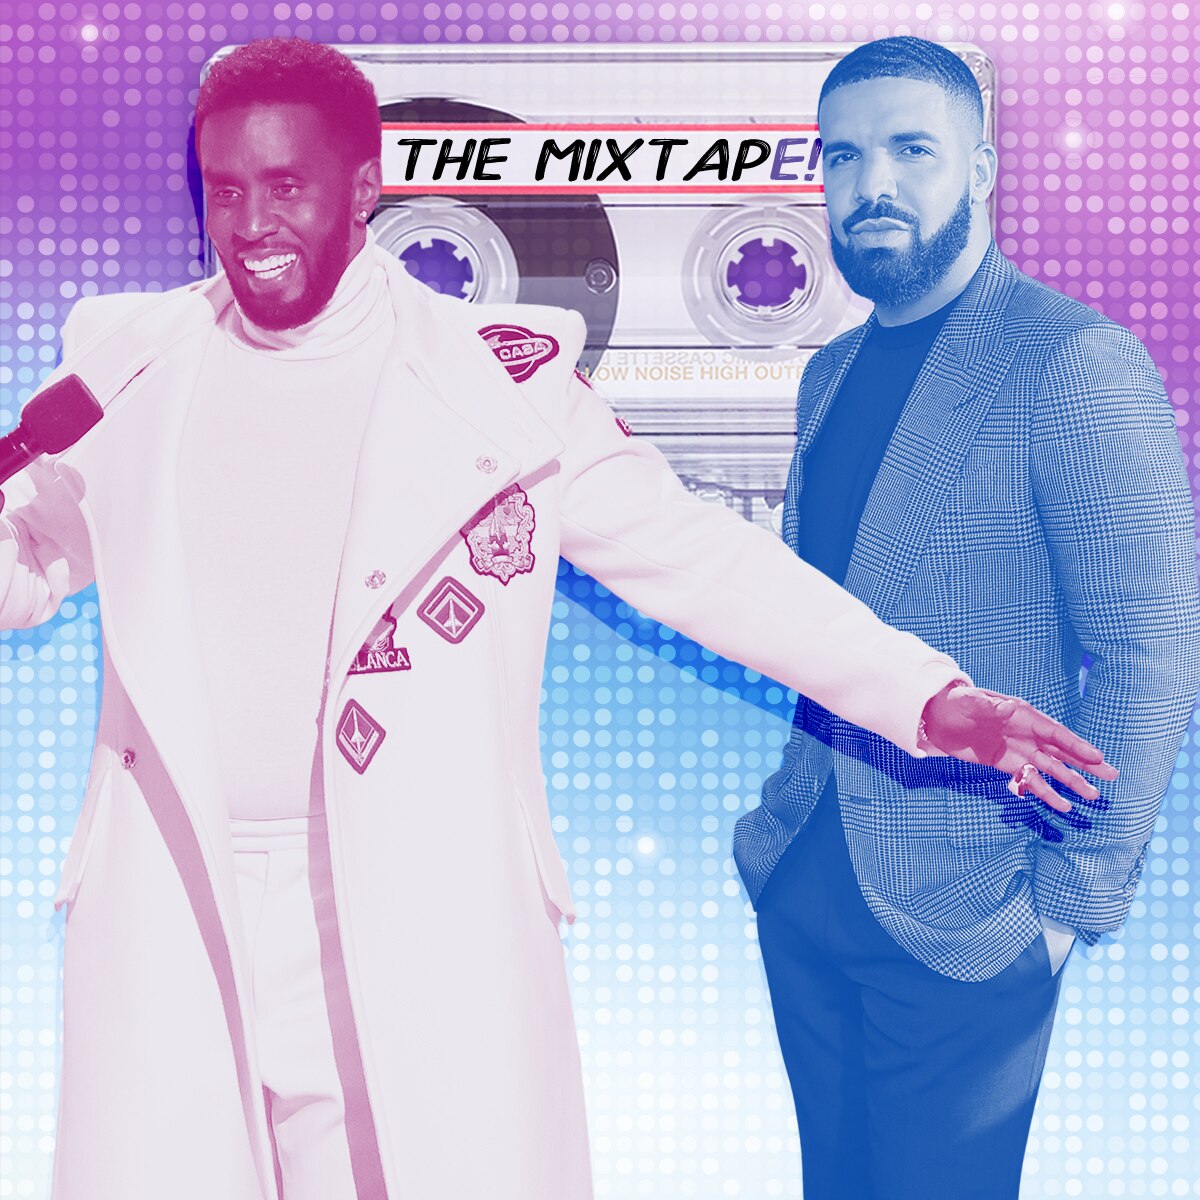 MixtapE!, Diddy, Drake